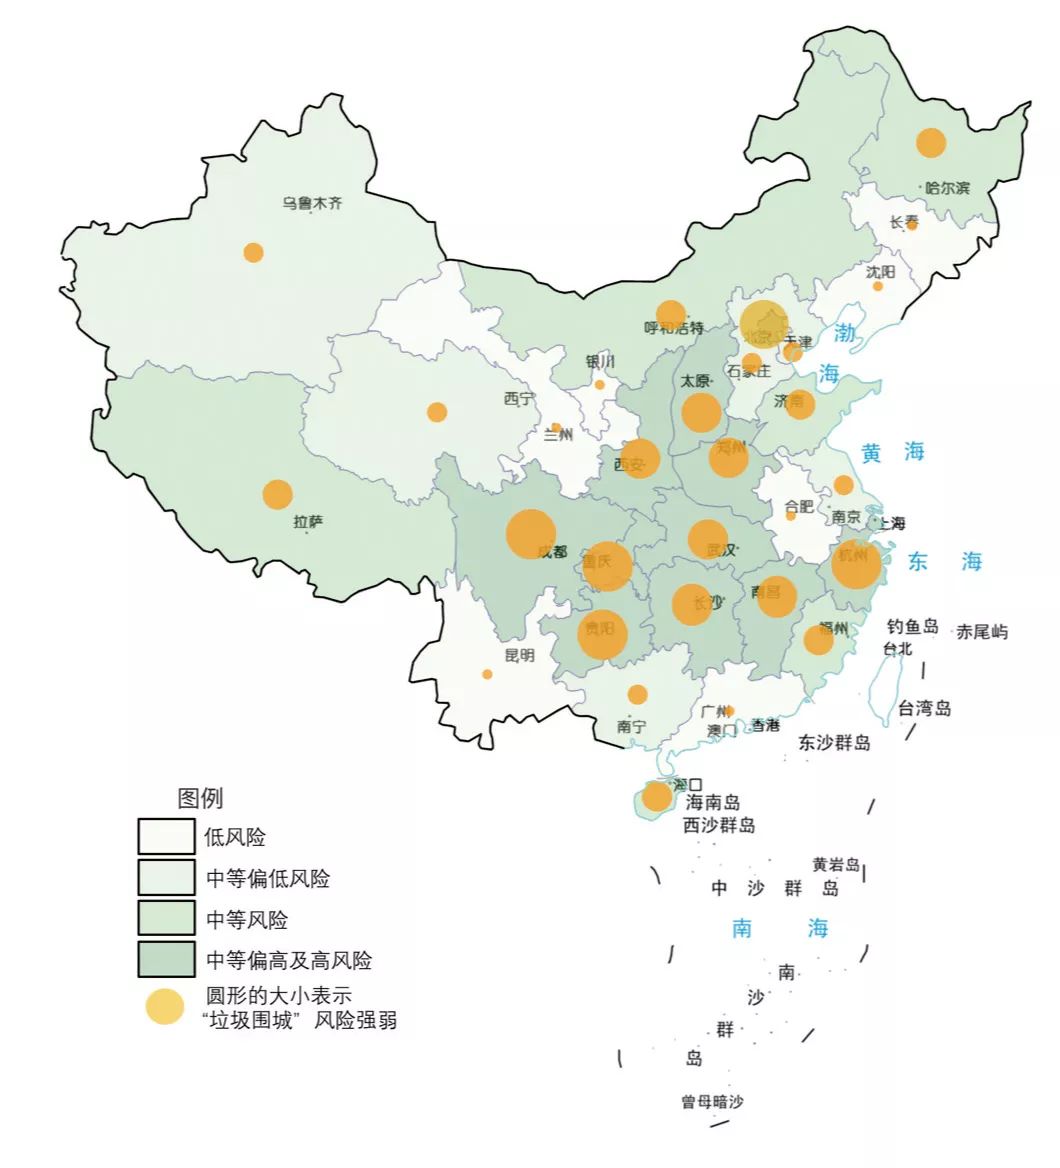 中国31个直辖市和省会城市“垃圾围城”风险与对策